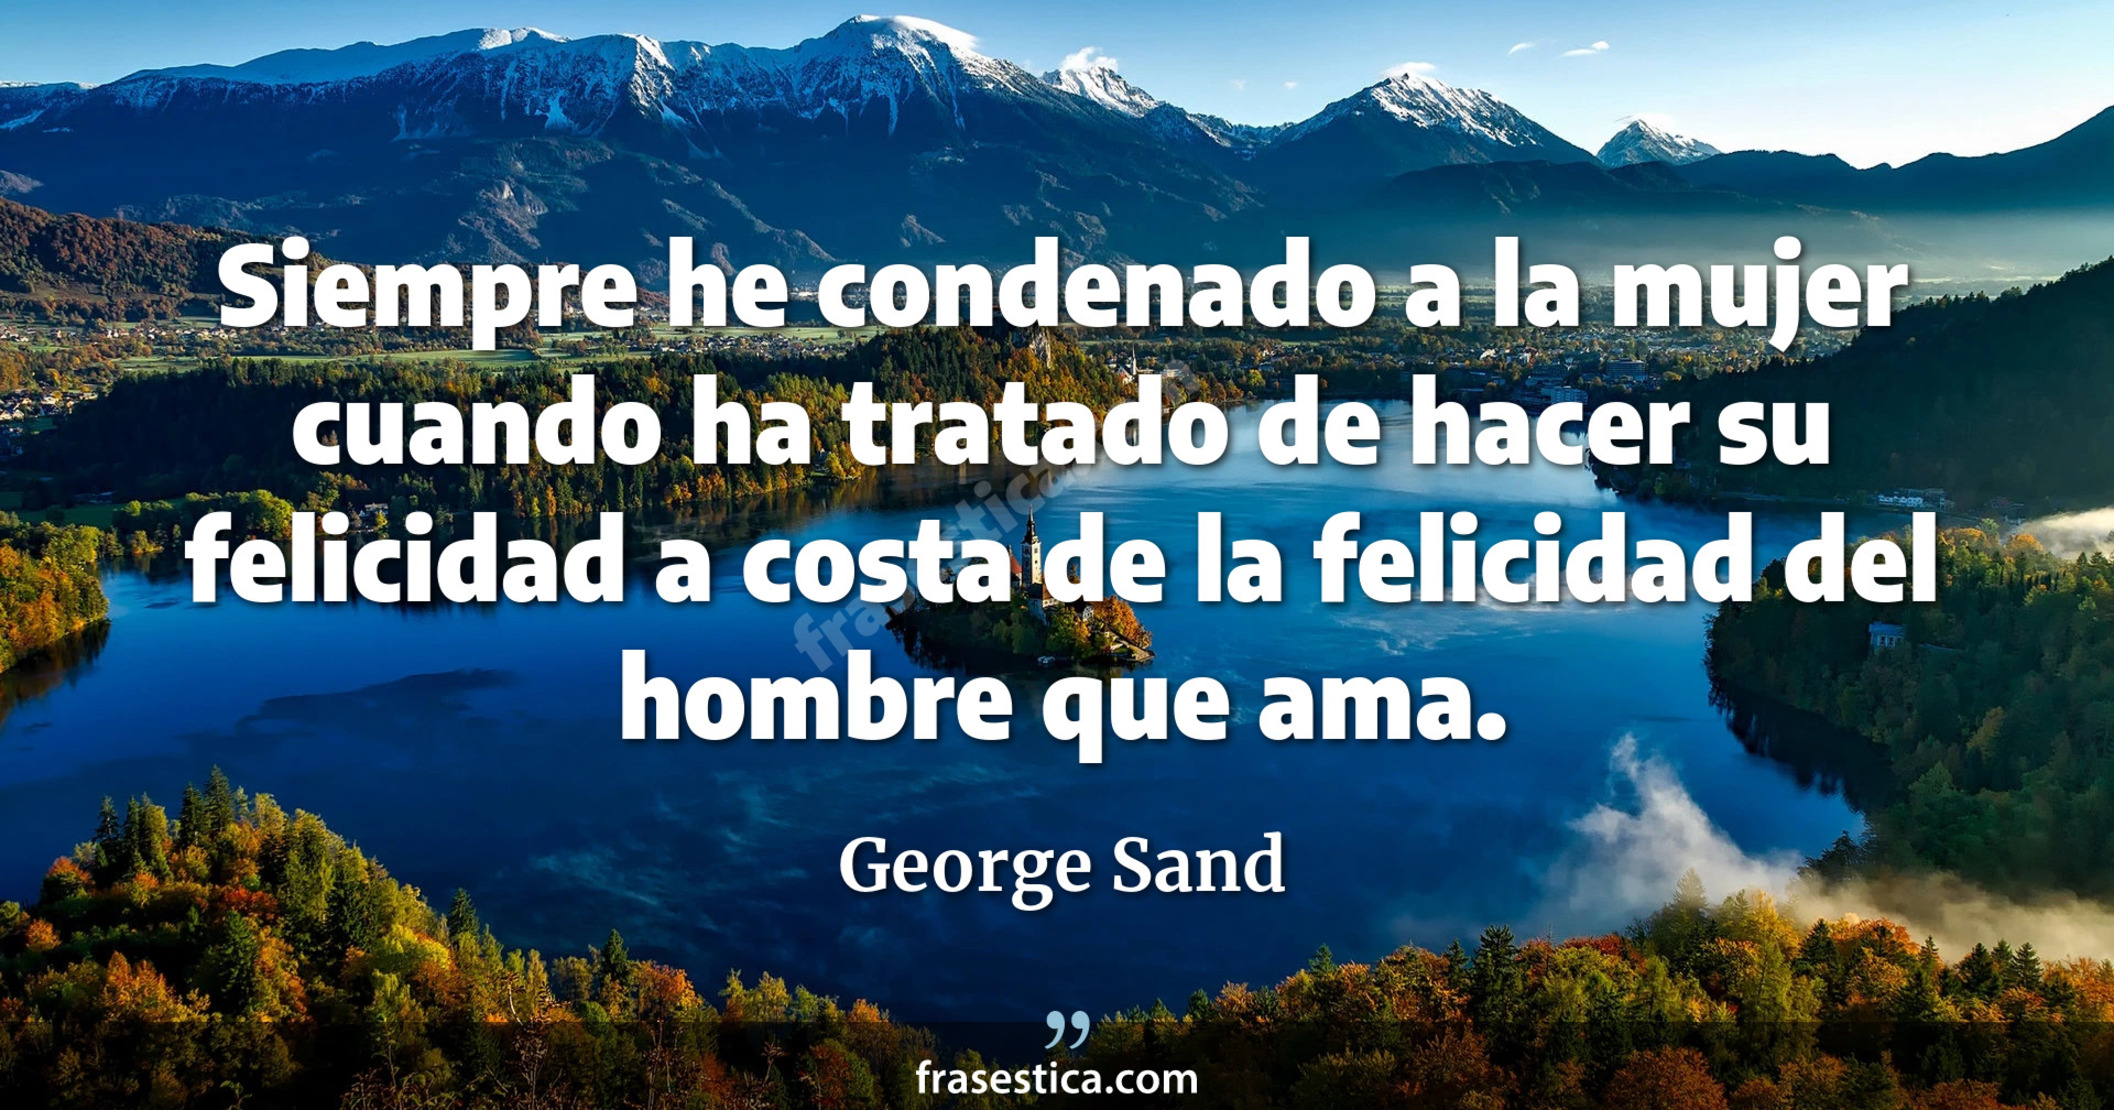 Siempre he condenado a la mujer cuando ha tratado de hacer su felicidad a costa de la felicidad del hombre que ama. - George Sand